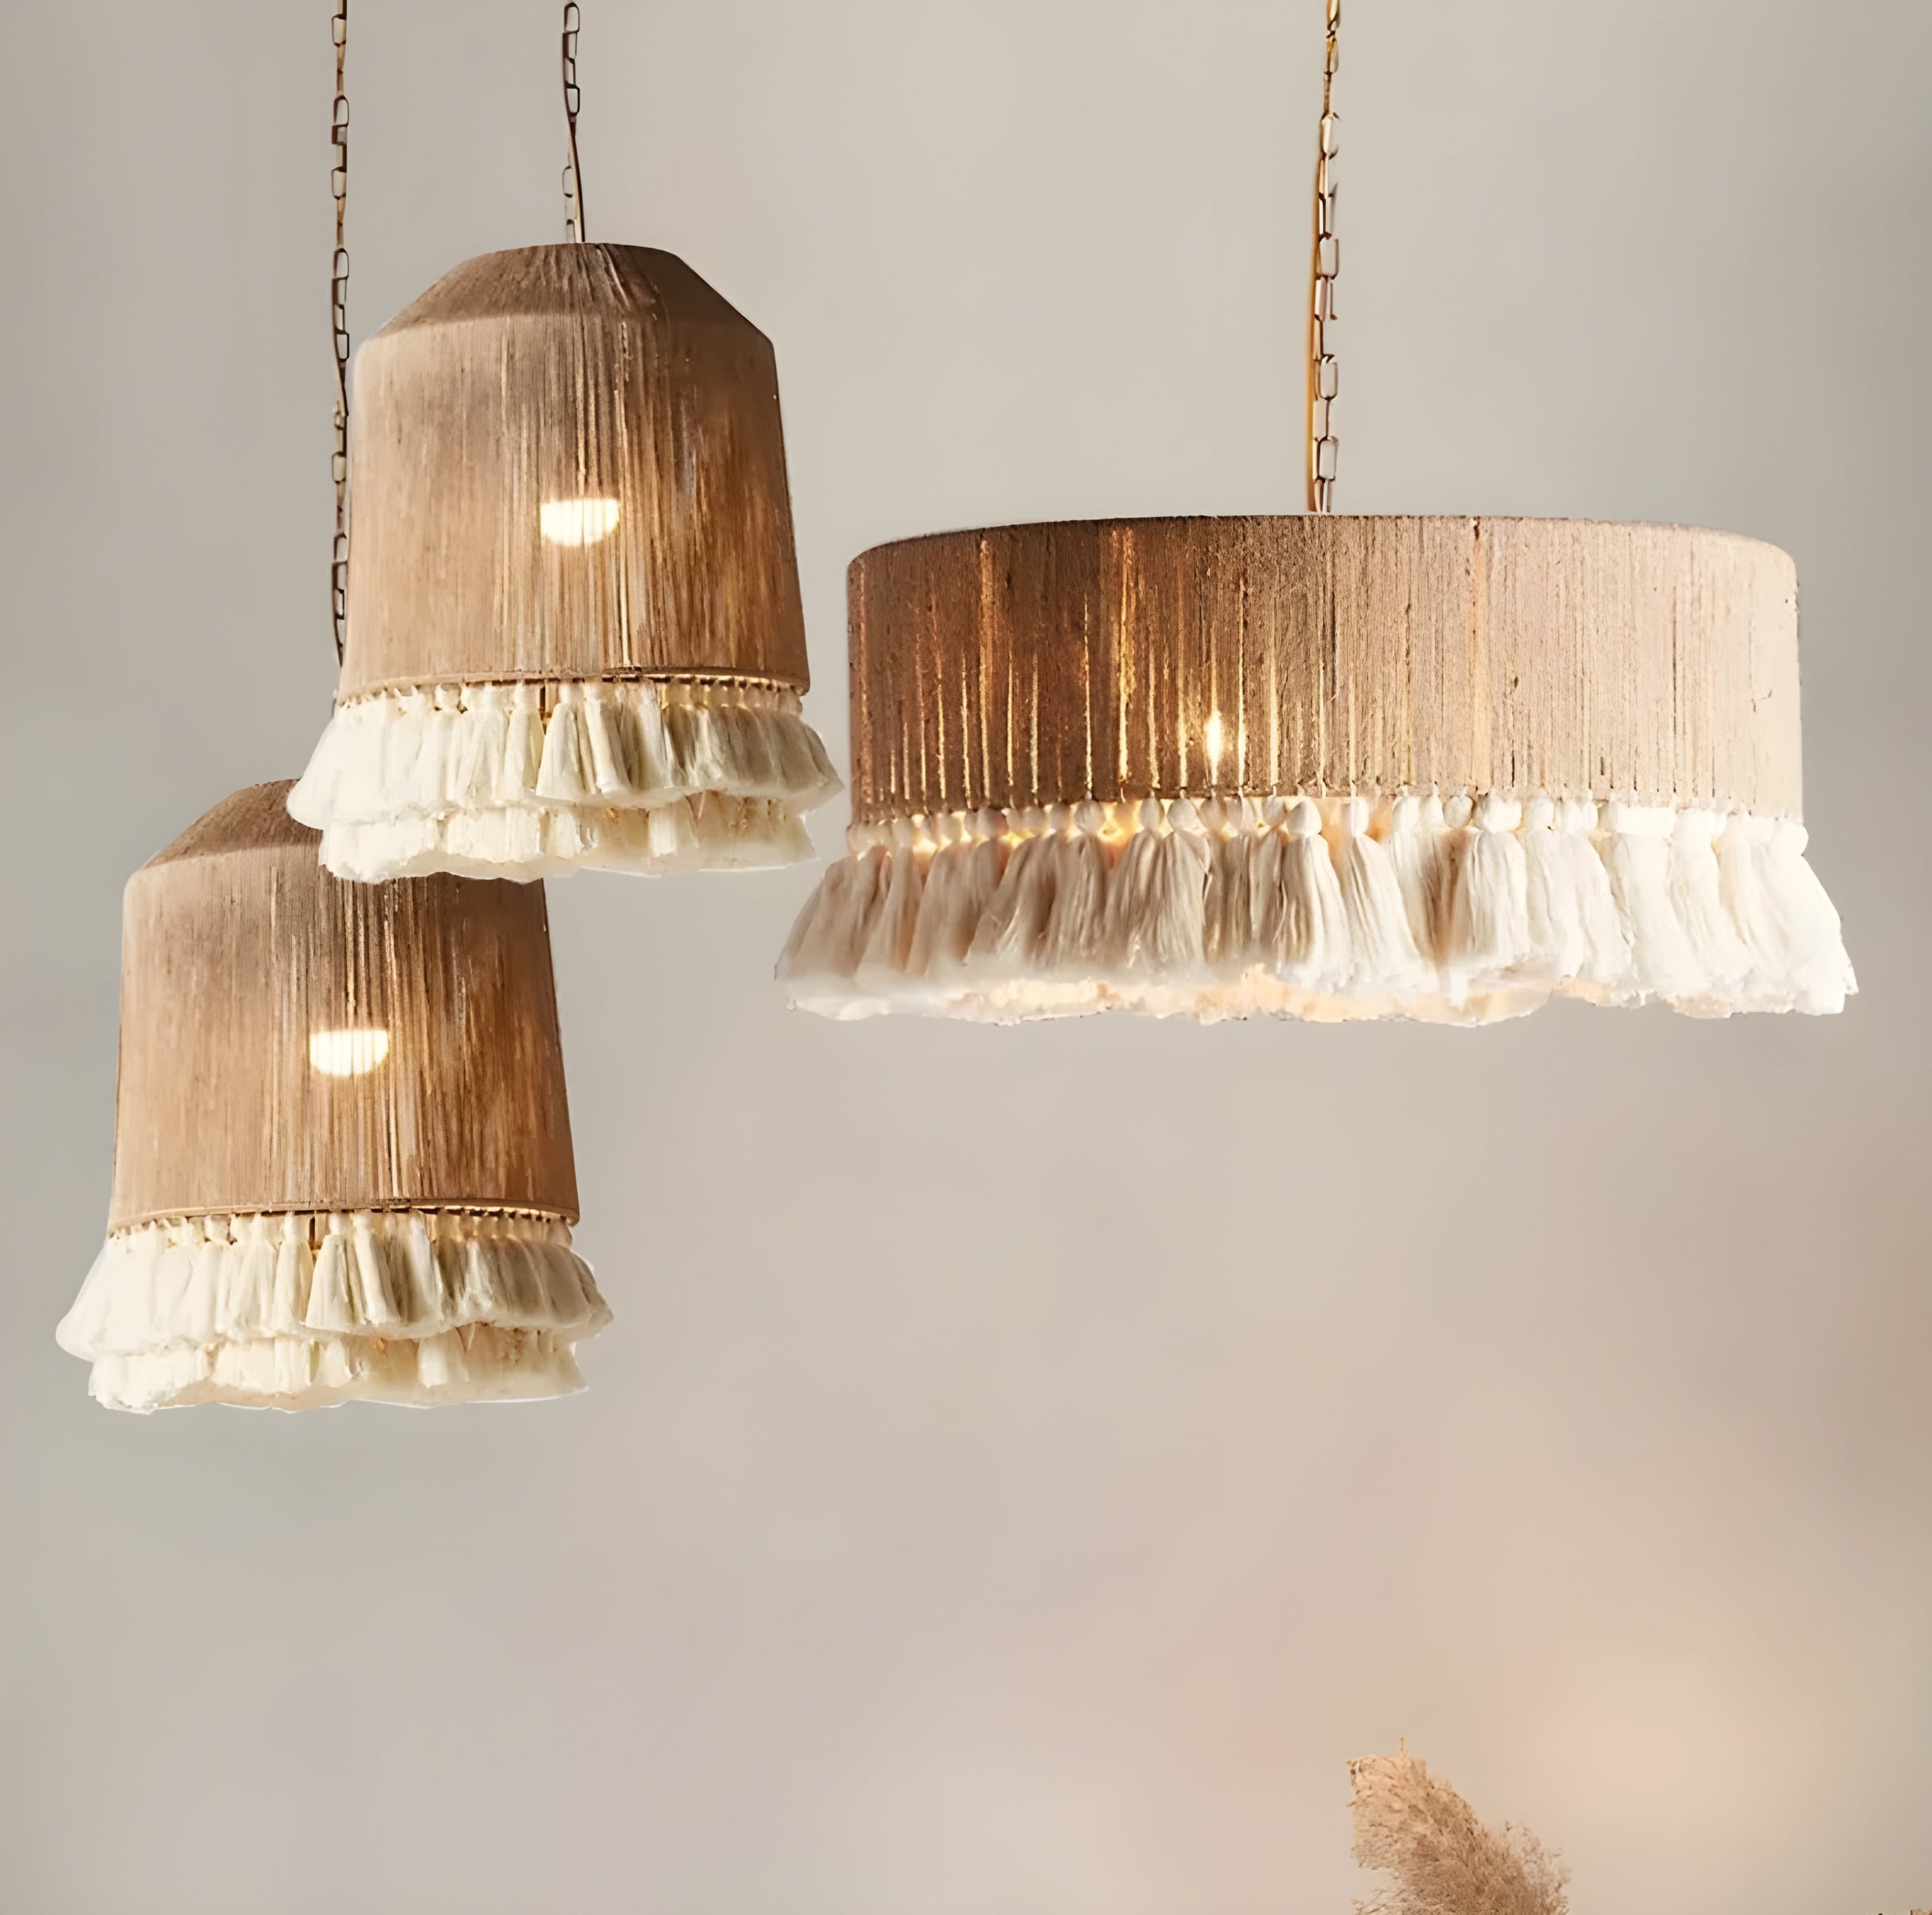 Hand-knitted Rattan Pendant Lights For Bedroom Living Room - Semi-flush Mounts